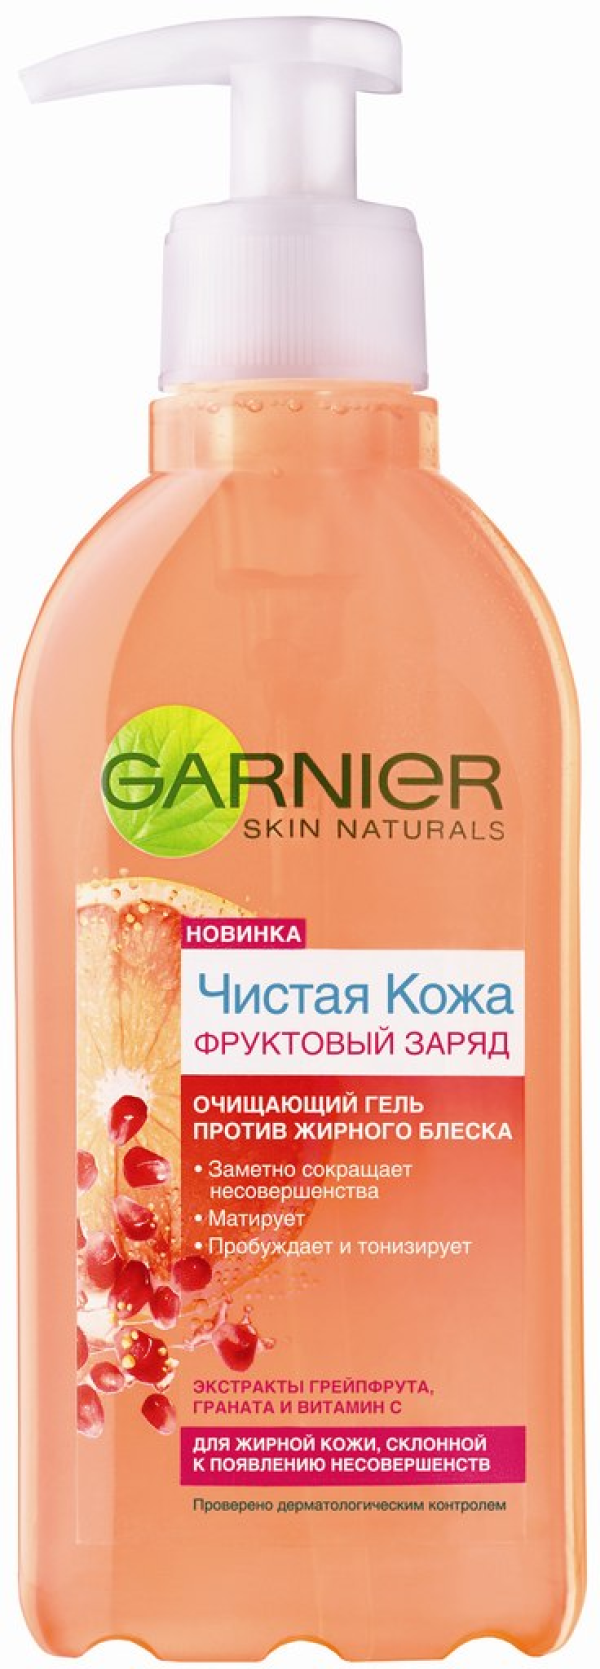 Отзывы о гель для умывания для жирной кожи - garnier ultra skin naturals чистая кожа фруктовый заряд в интернет магазине парфюме.